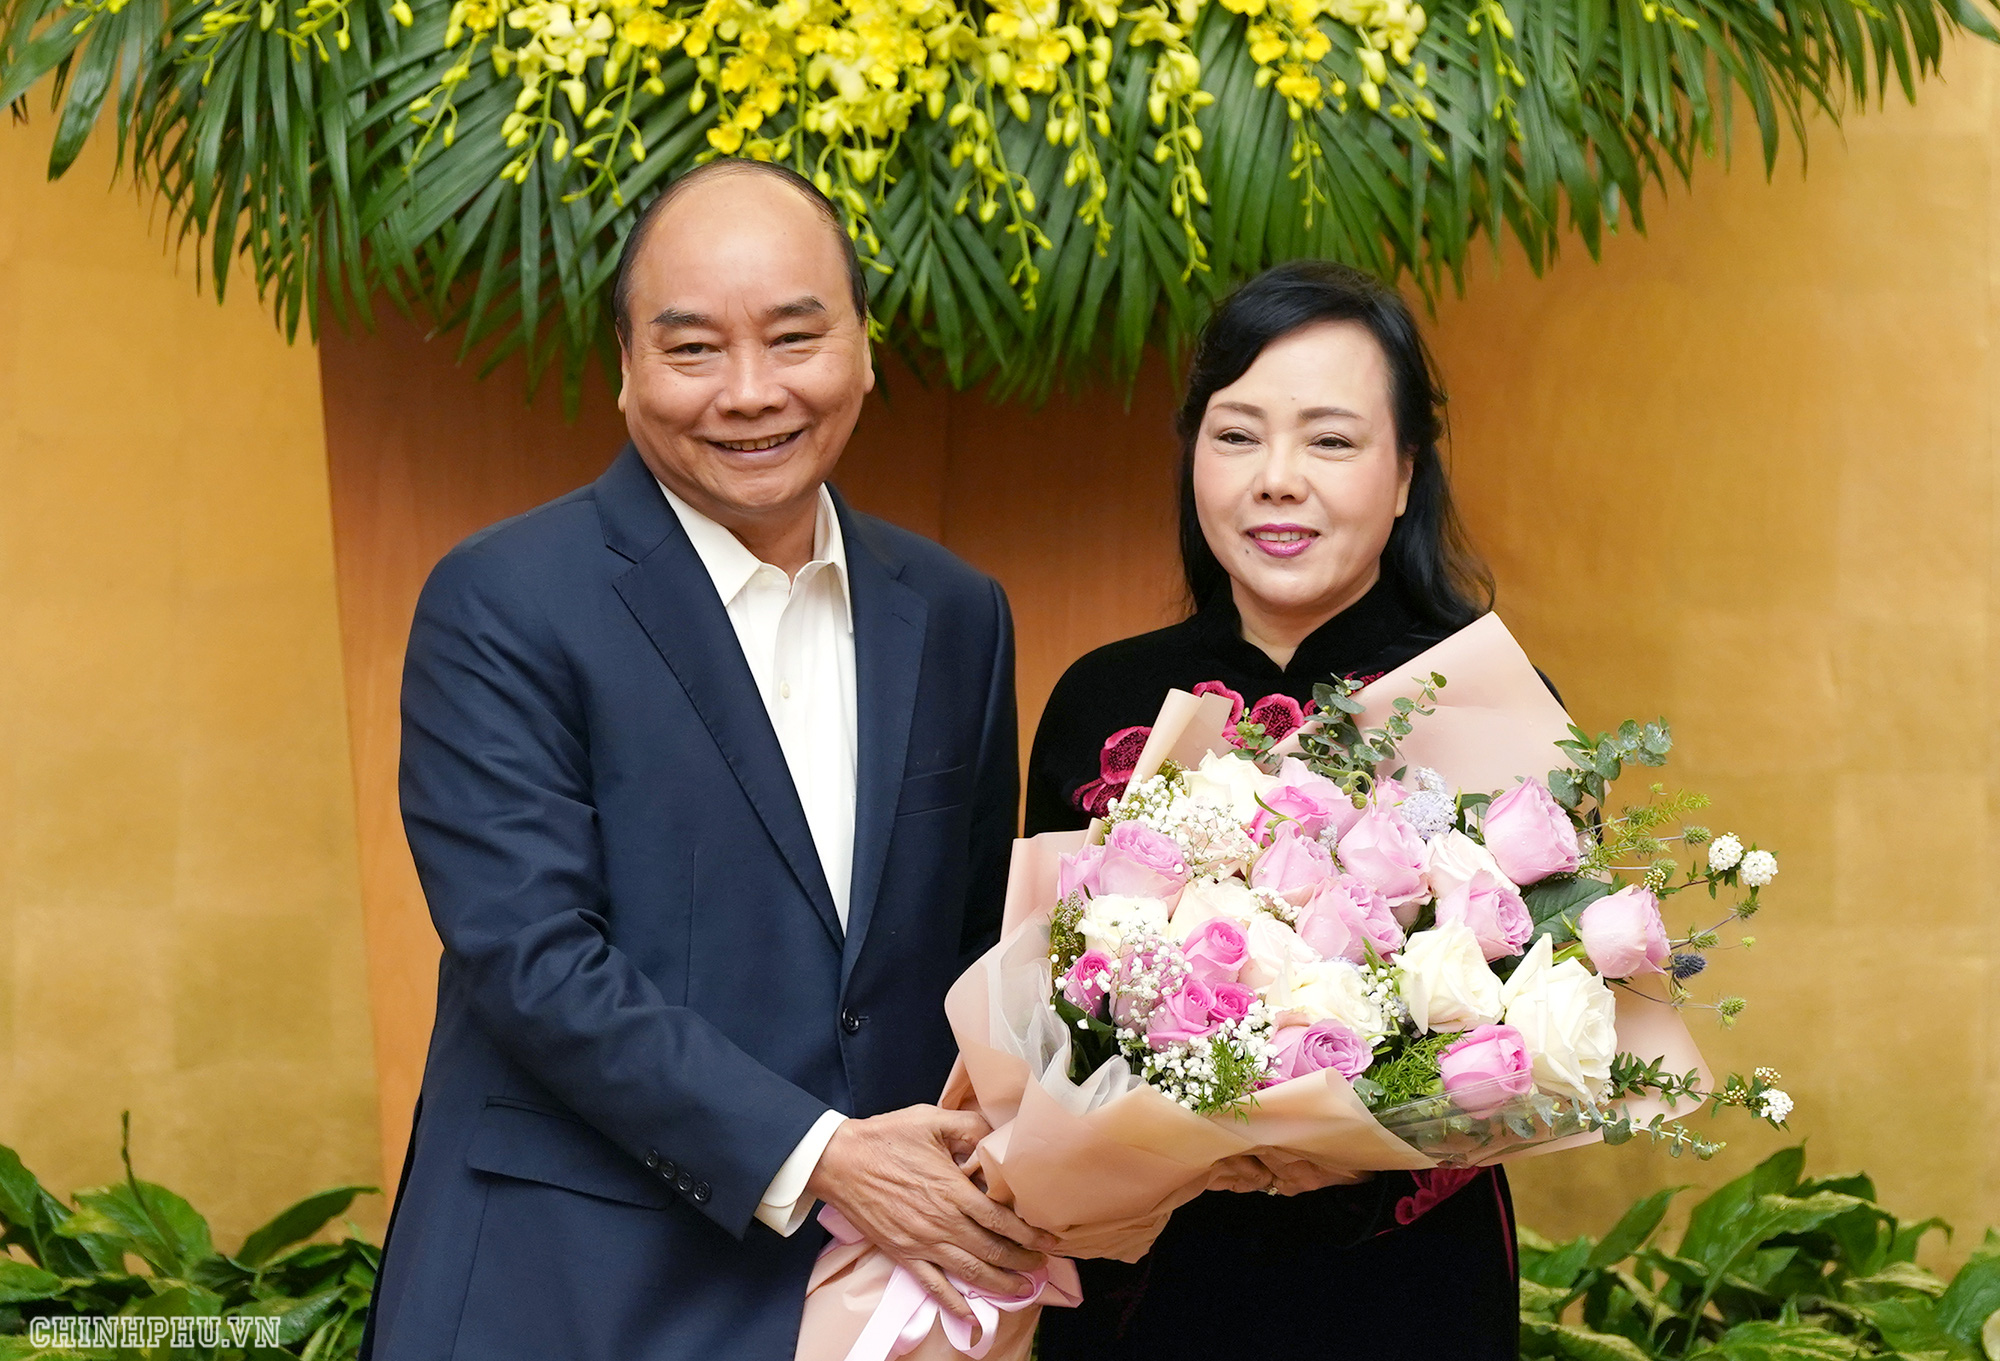 Bà Nguyễn Thị Kim Tiến tham dự buổi họp Chính phủ: &quot;Hôm nay là ngày đáng nhớ trong cuộc đời&quot; - Ảnh 1.